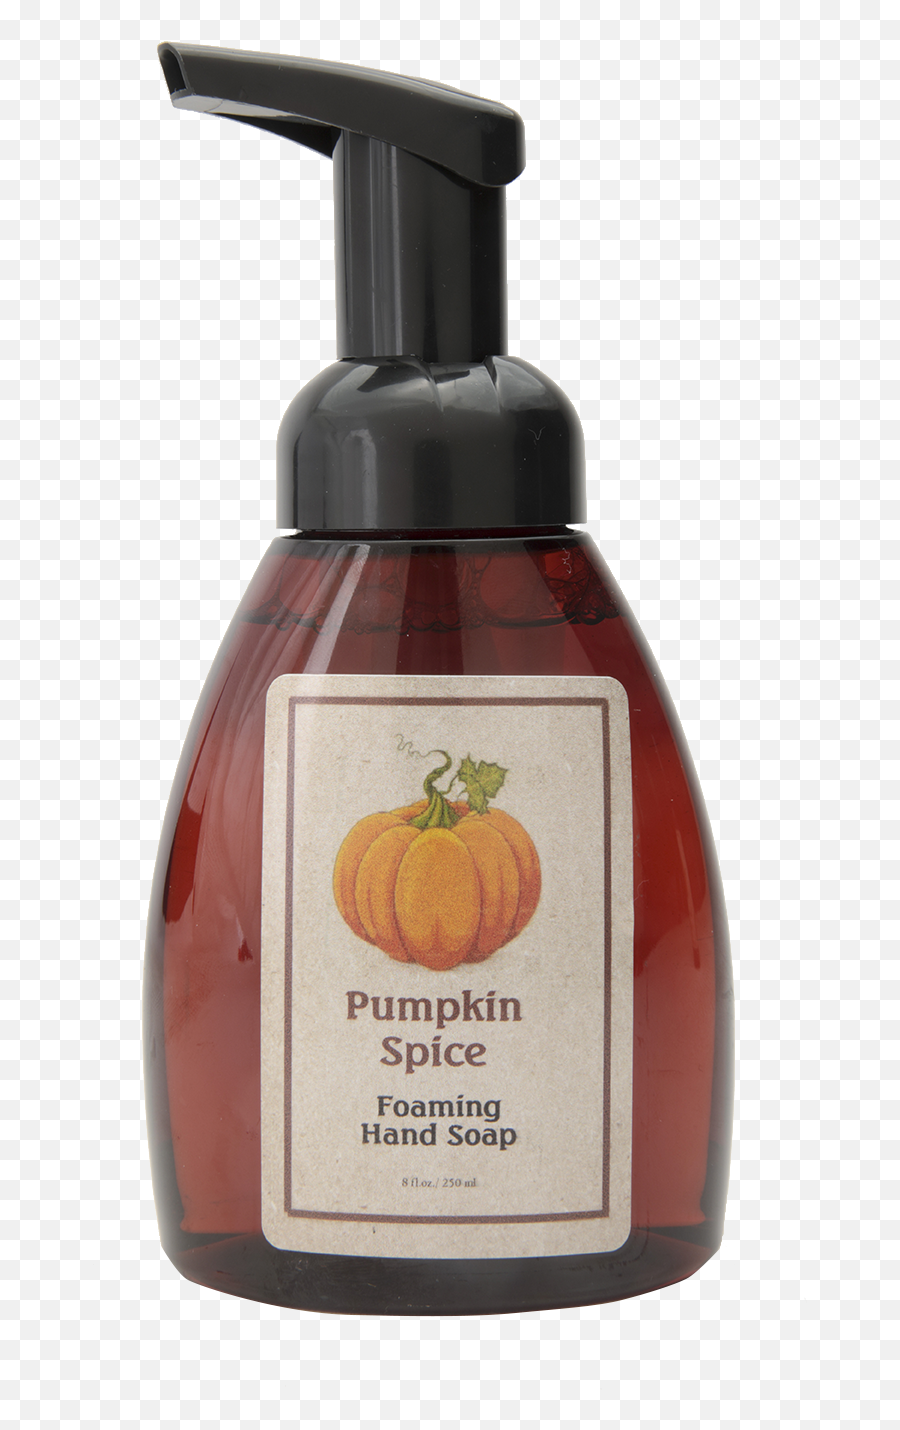 Foaming Hand Soap Pumpkin Spice - Liquid Hand Soap Png,Pumpkin Spice Png